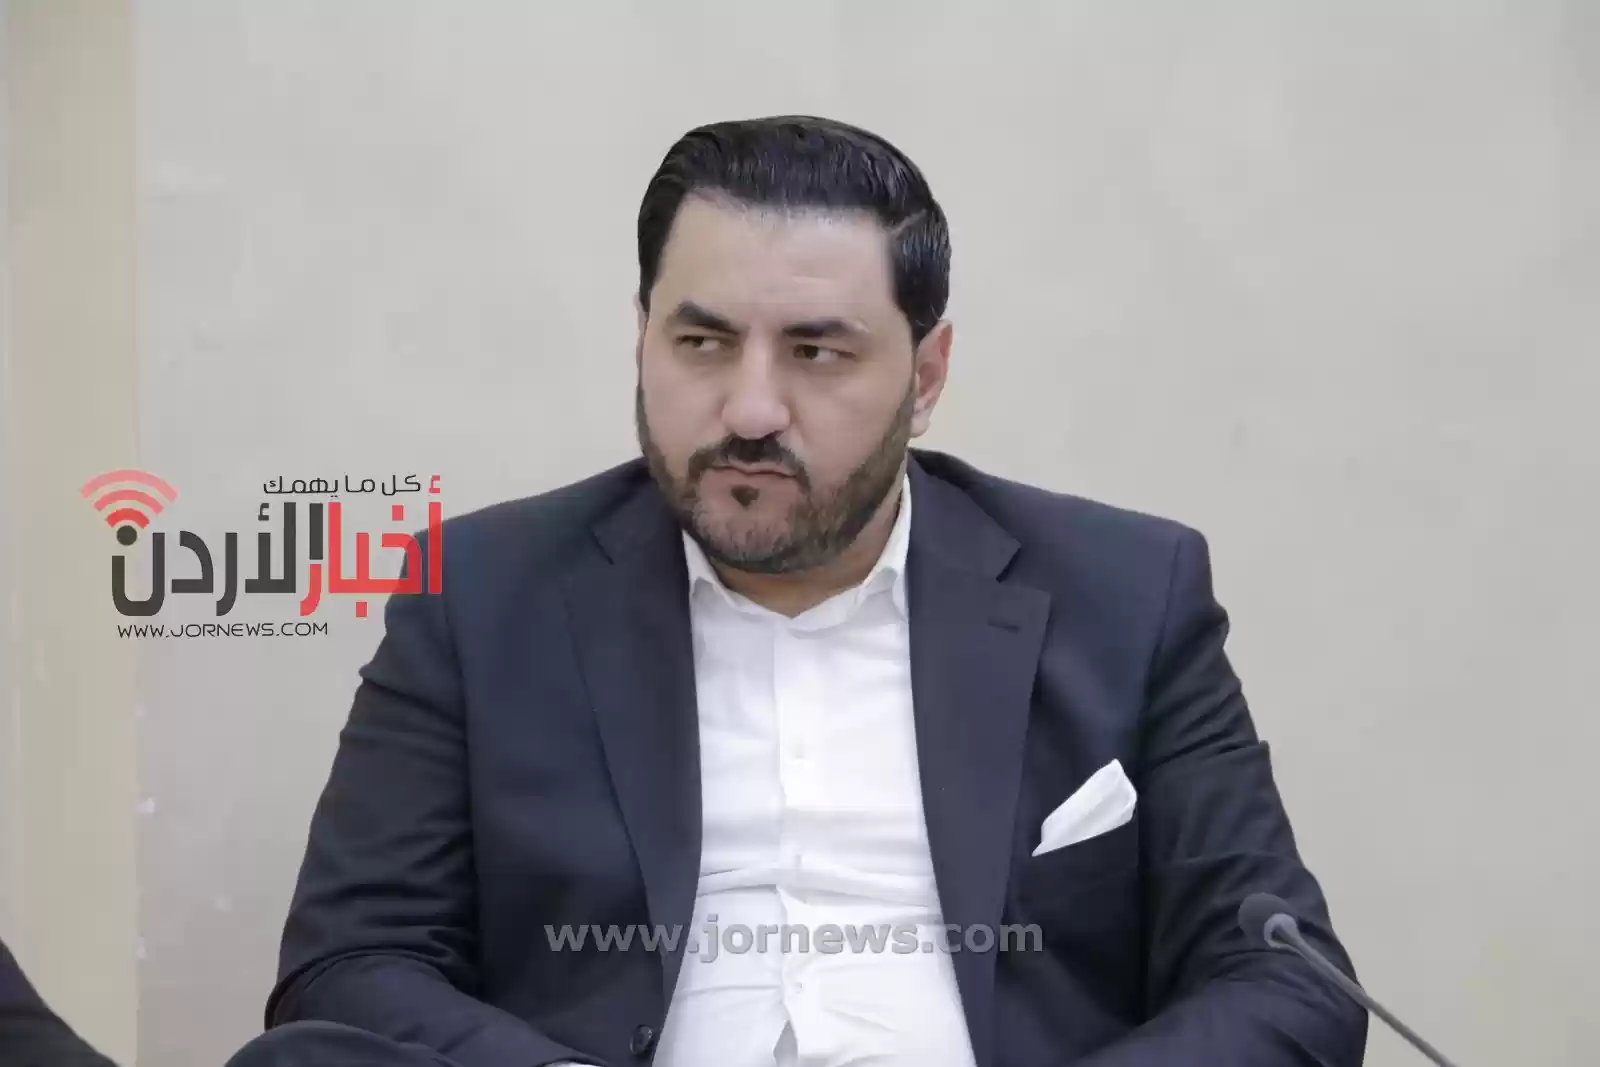 النائب فريحات: المجلس الحالي من الأضعف بتاريخ الأردن - فيديو